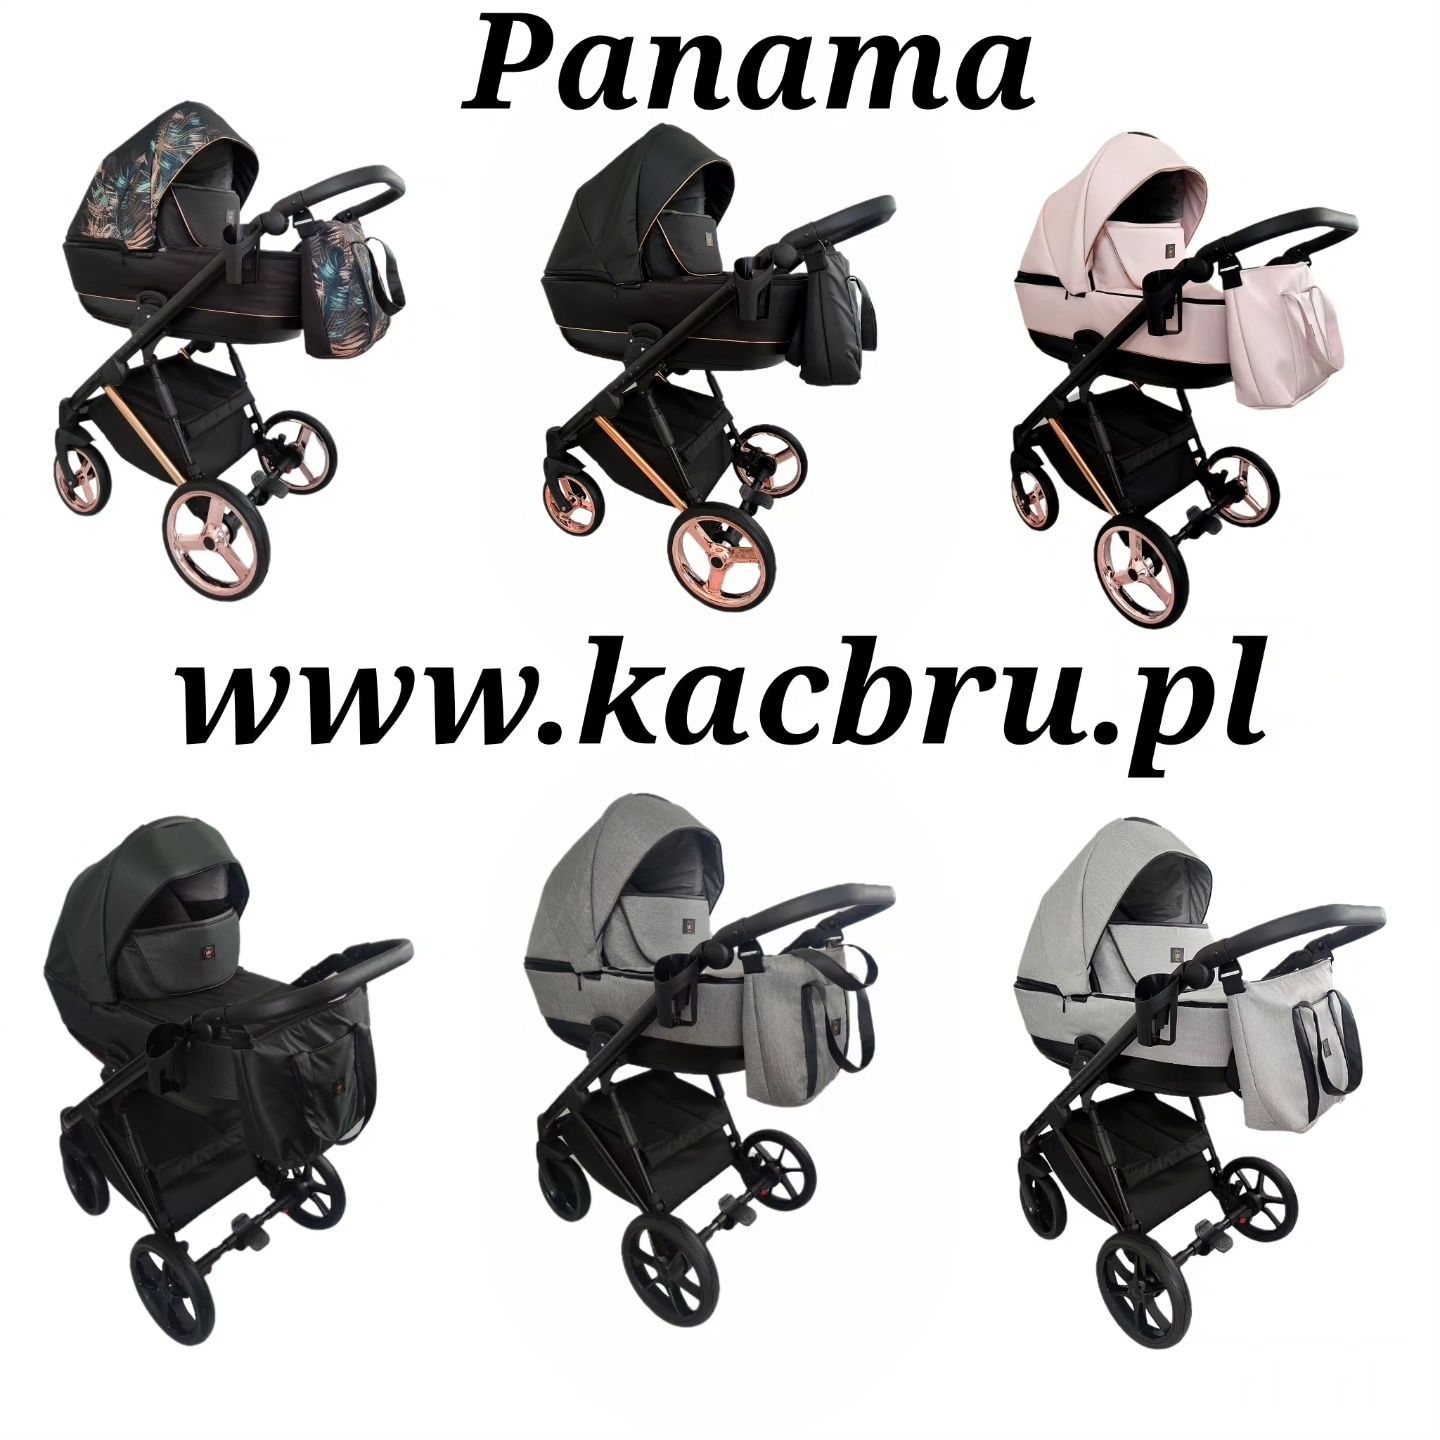 Nowy wózek dziecięcy Panama 2w1, 3w1 i 4w1. Polski !